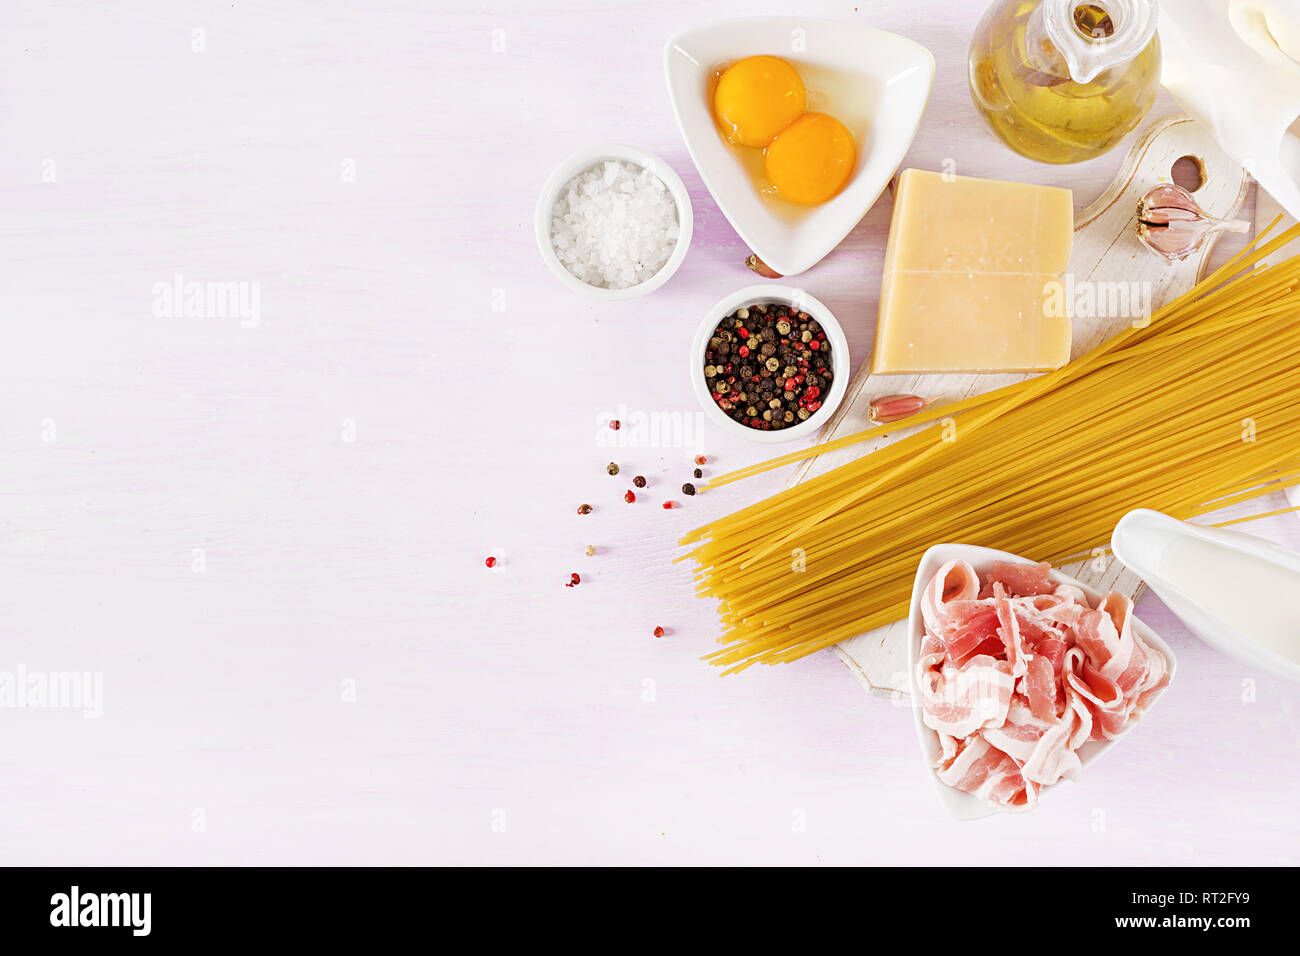 Ingrédients pour la cuisson des pâtes Carbonara, spaghetti à la pancetta, oeuf, poivrons, le sel et le parmesan. La cuisine italienne. Pasta alla carbonara. Banque D'Images